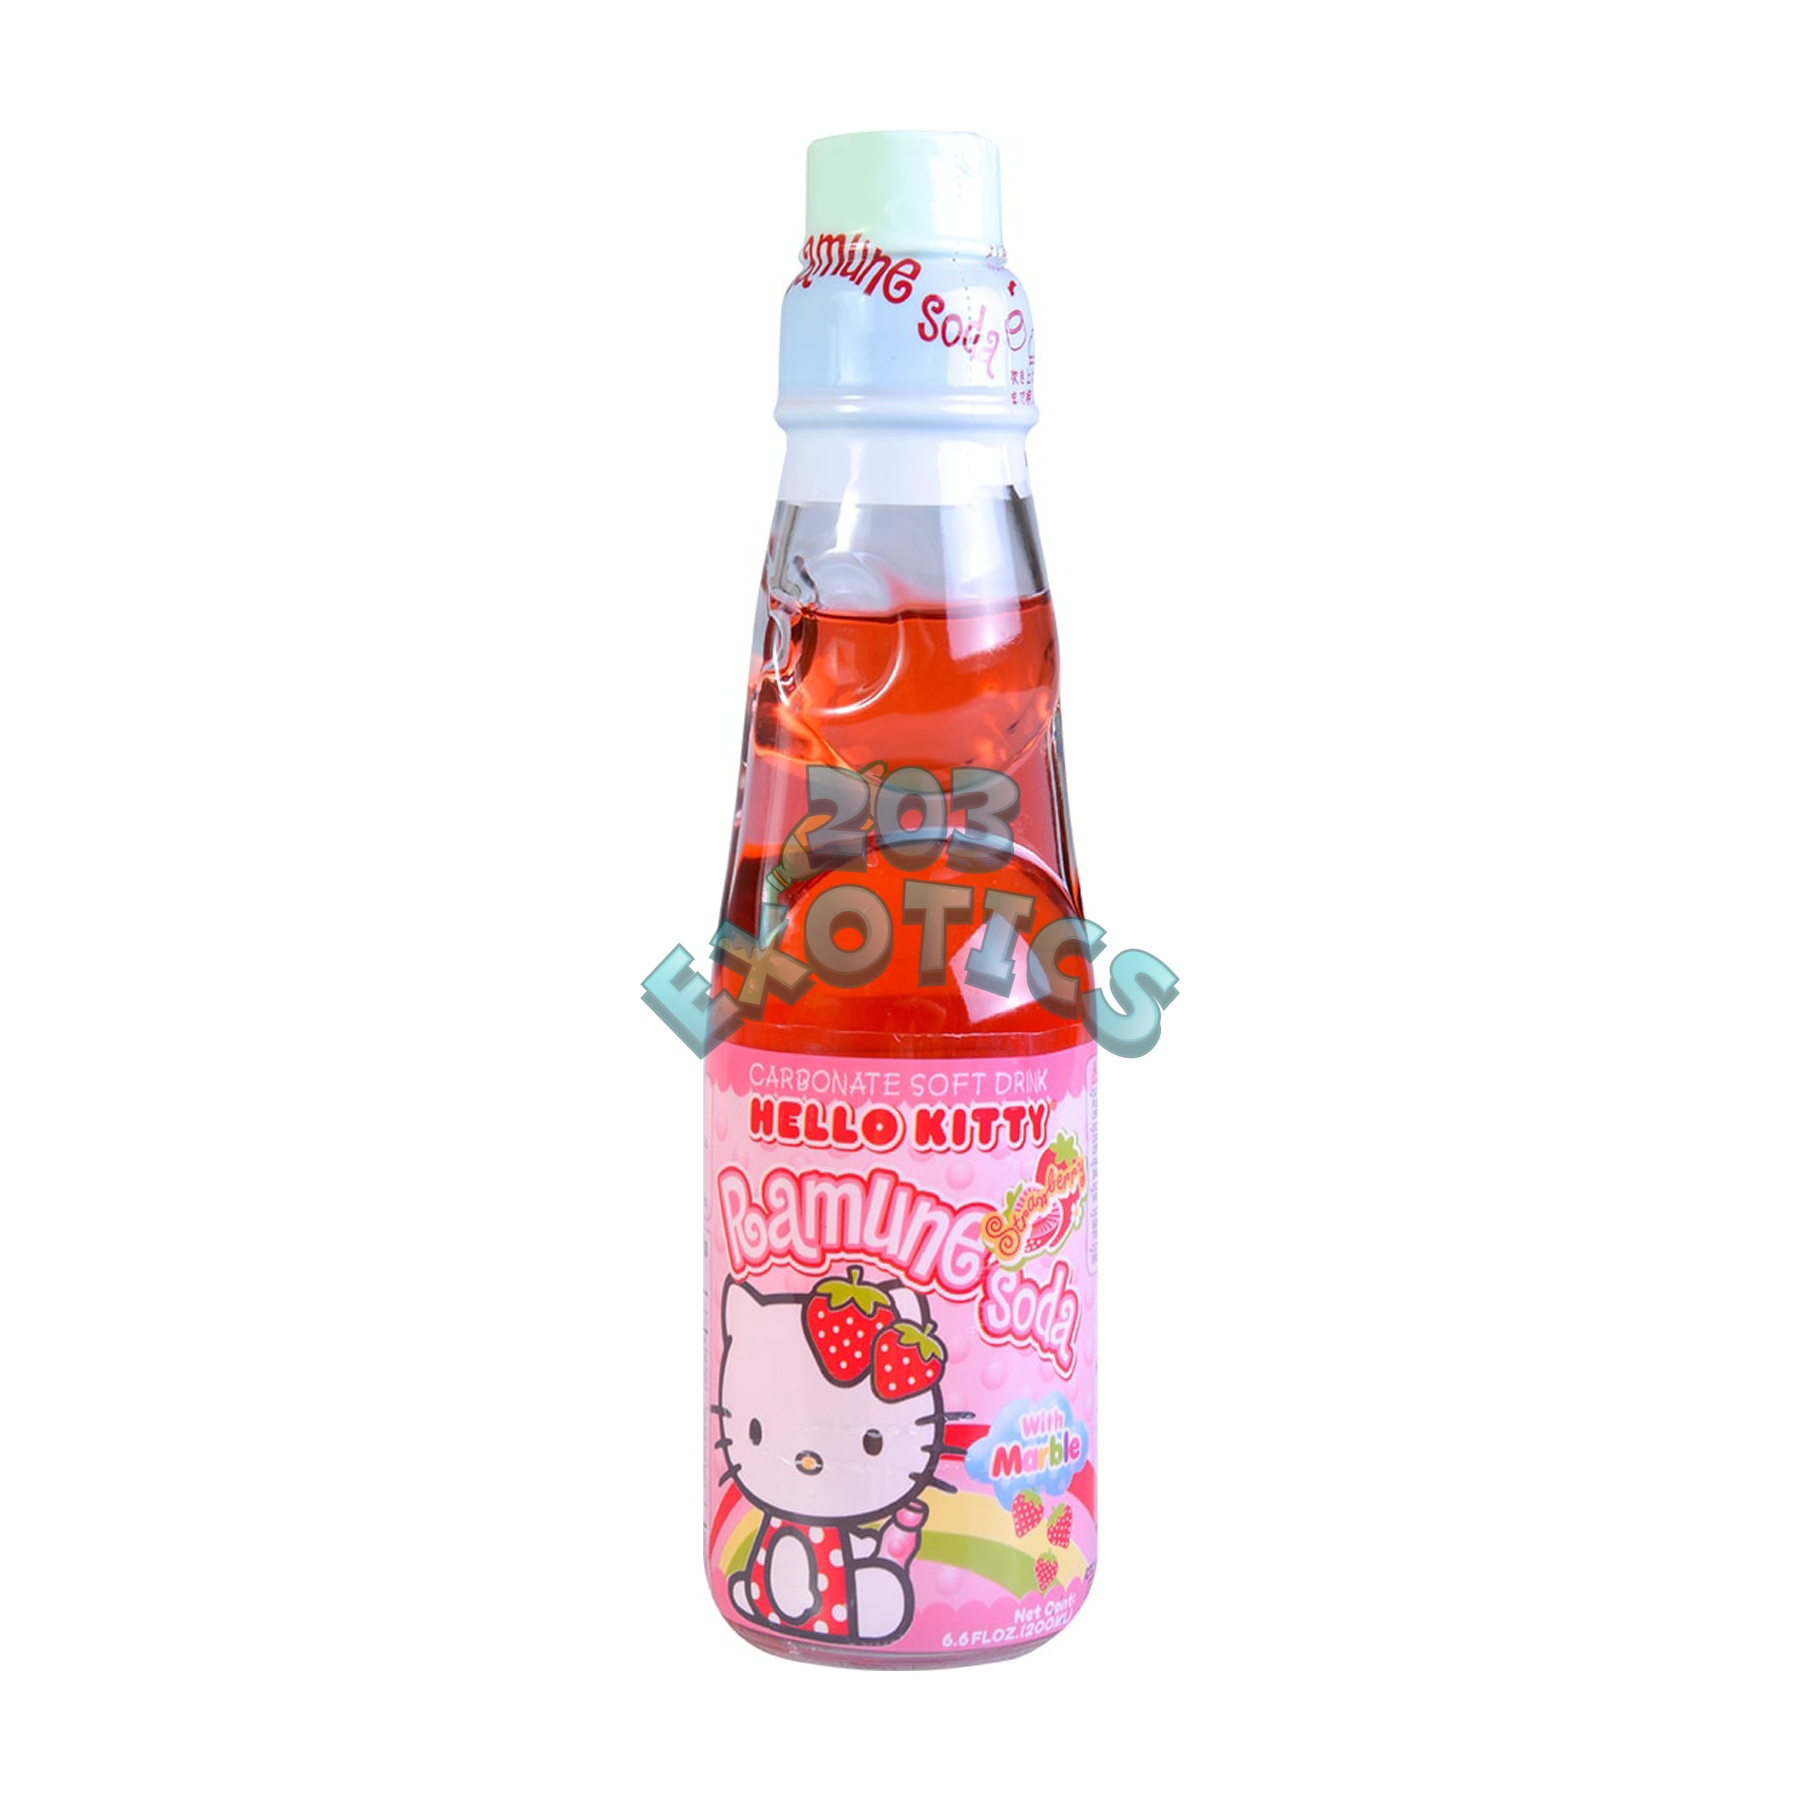 Hello Kitty Ramune Stawberry Flavor (6.76 Fl Oz)